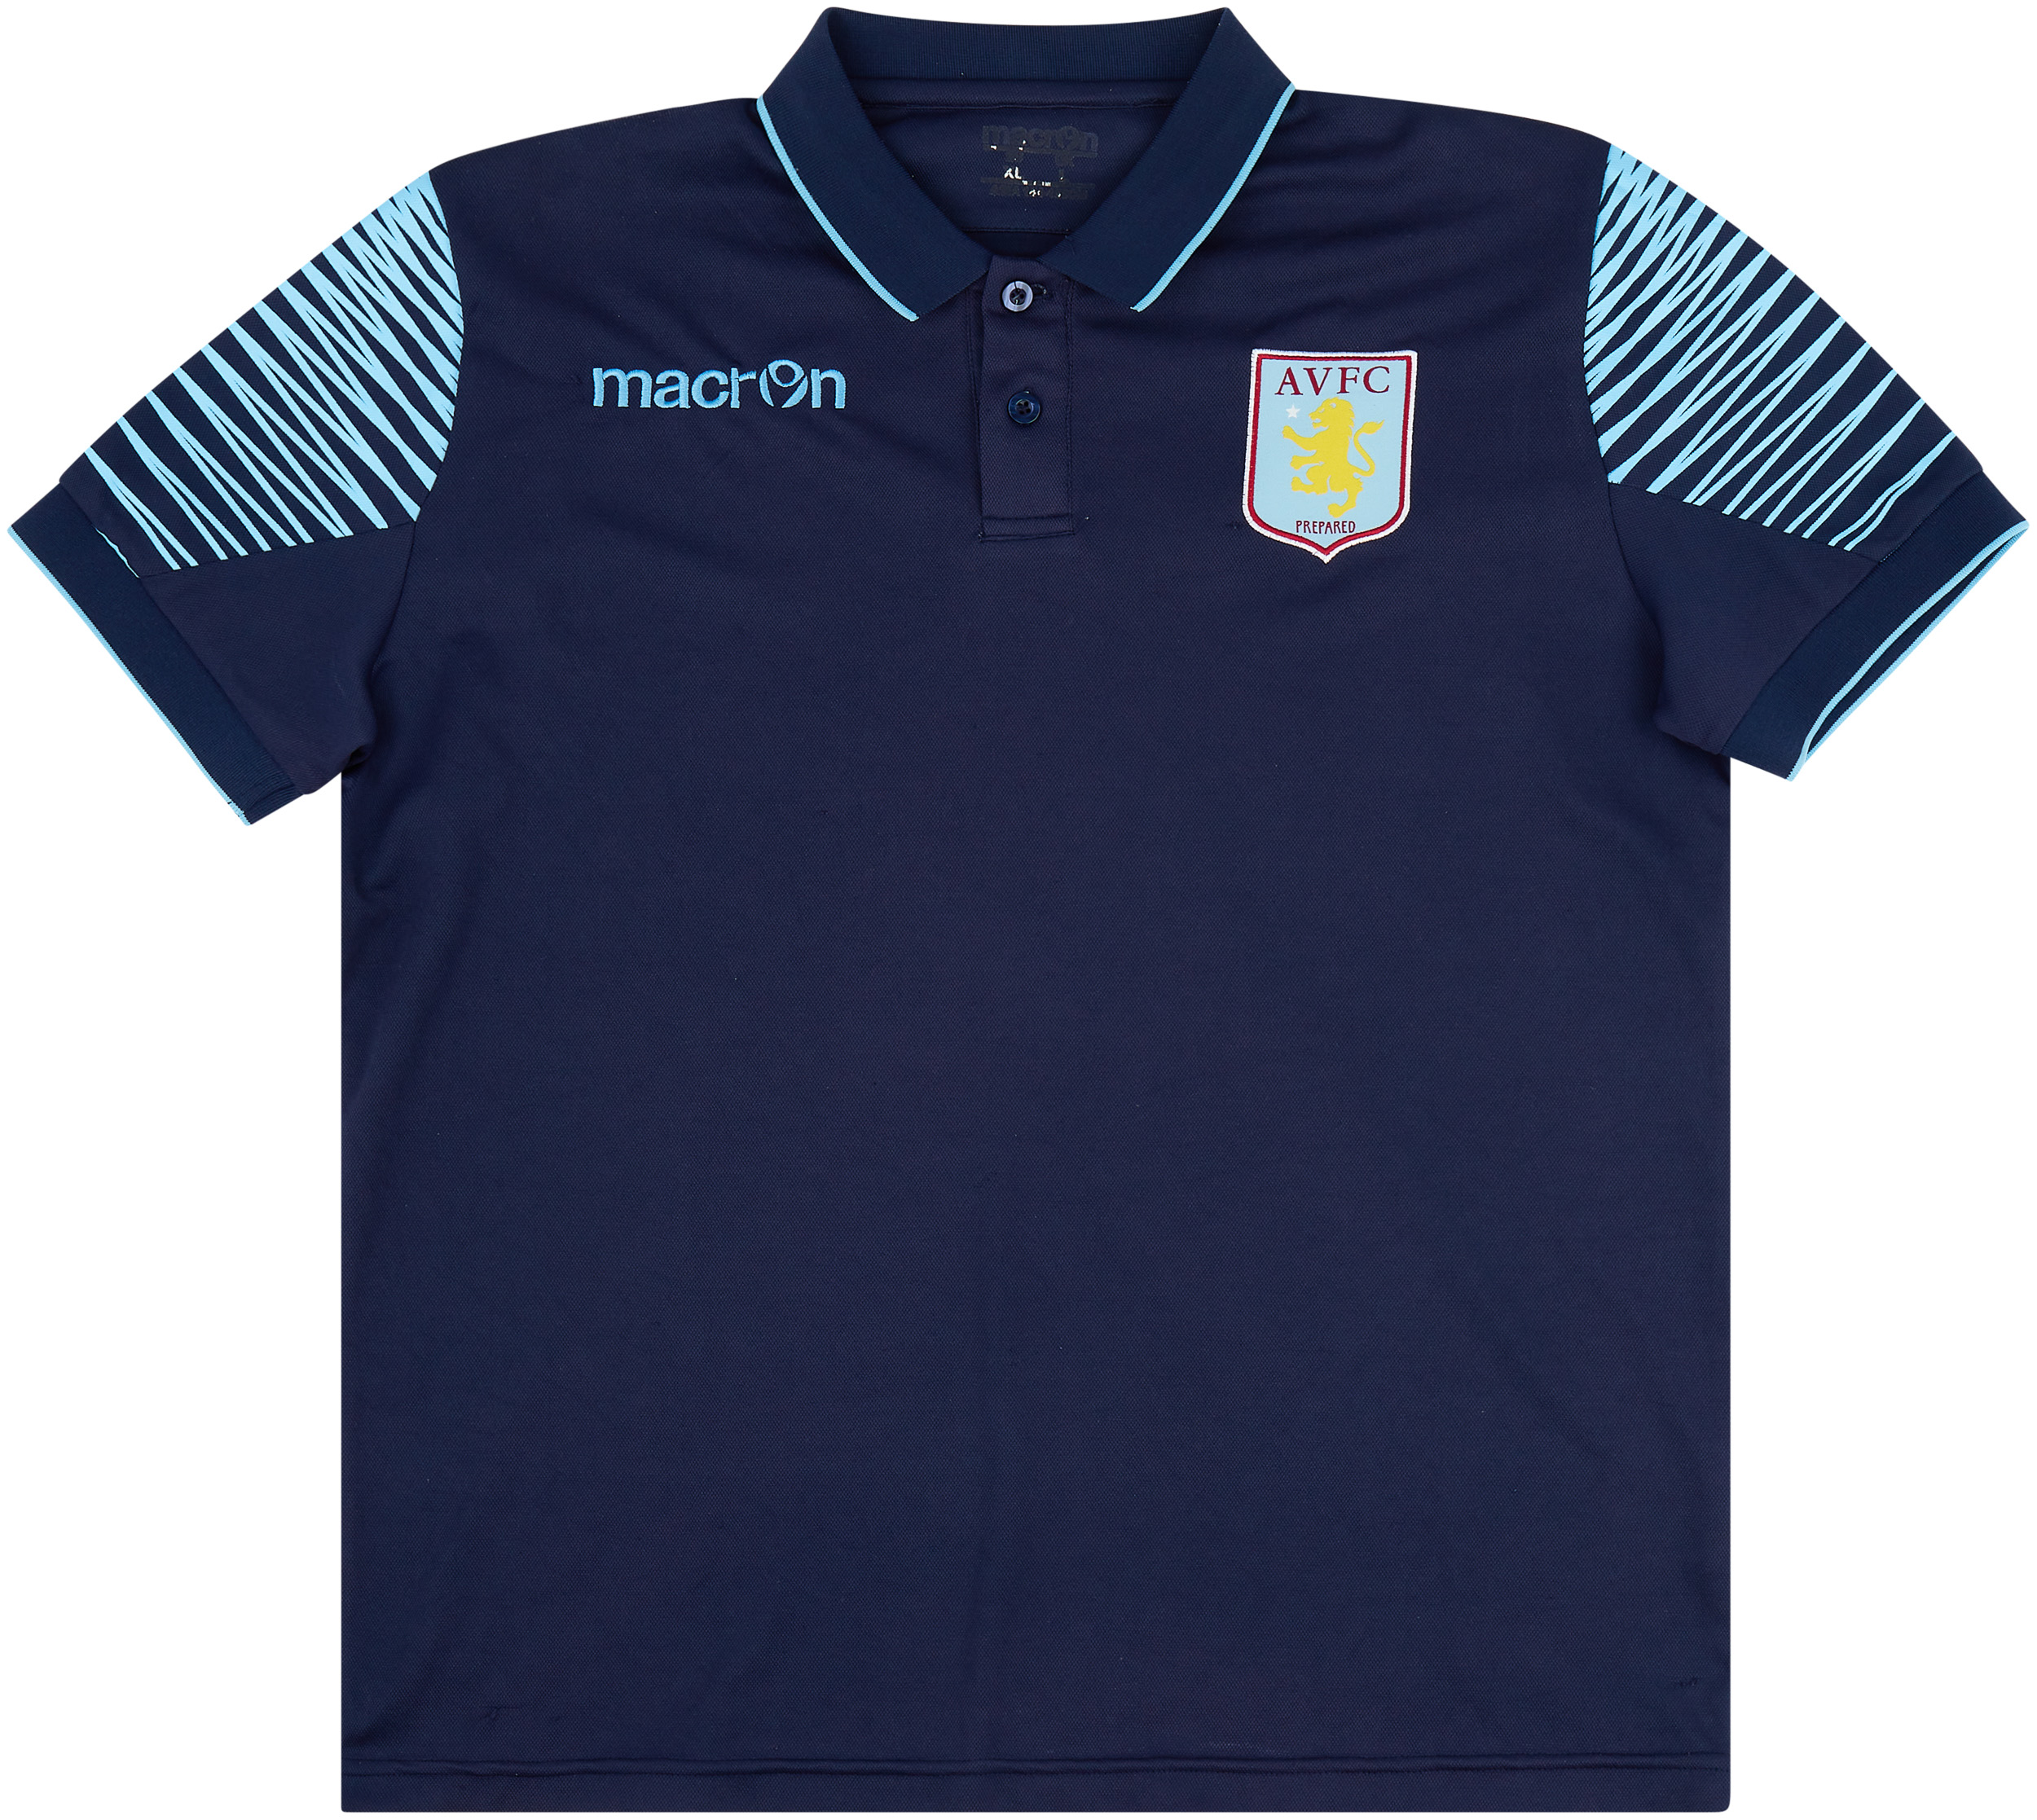 2015-16 Aston Villa Macron Polo Shirt - Very Good 7/10 - (XL)